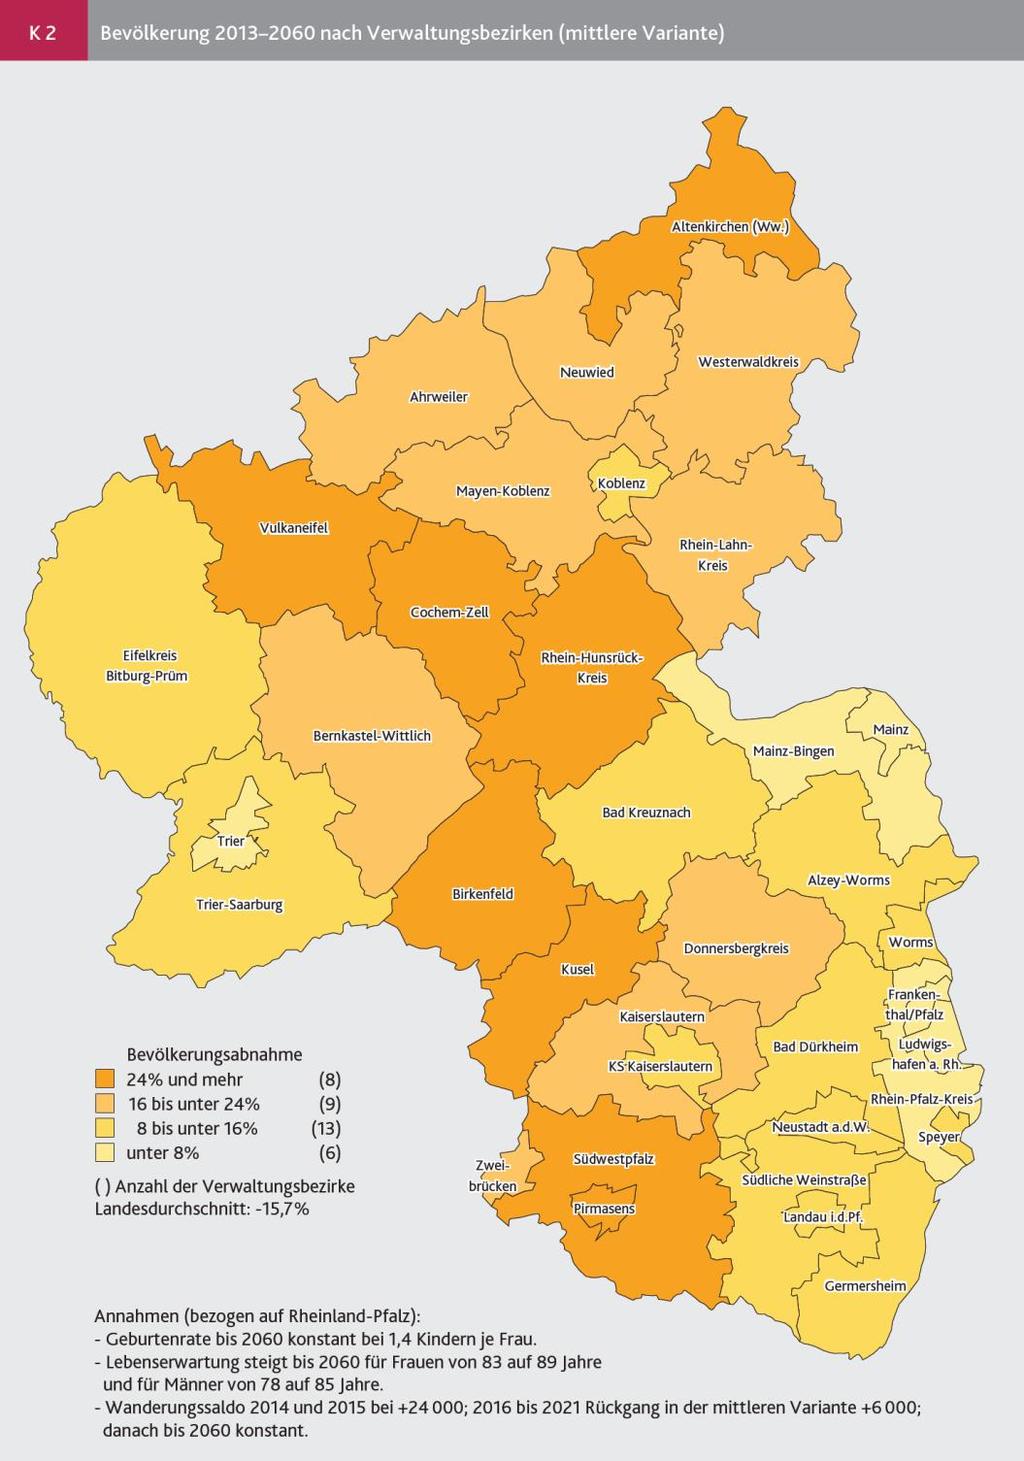 Abnehmende Bevölkerungszahlen in Rheinland-Pfalz